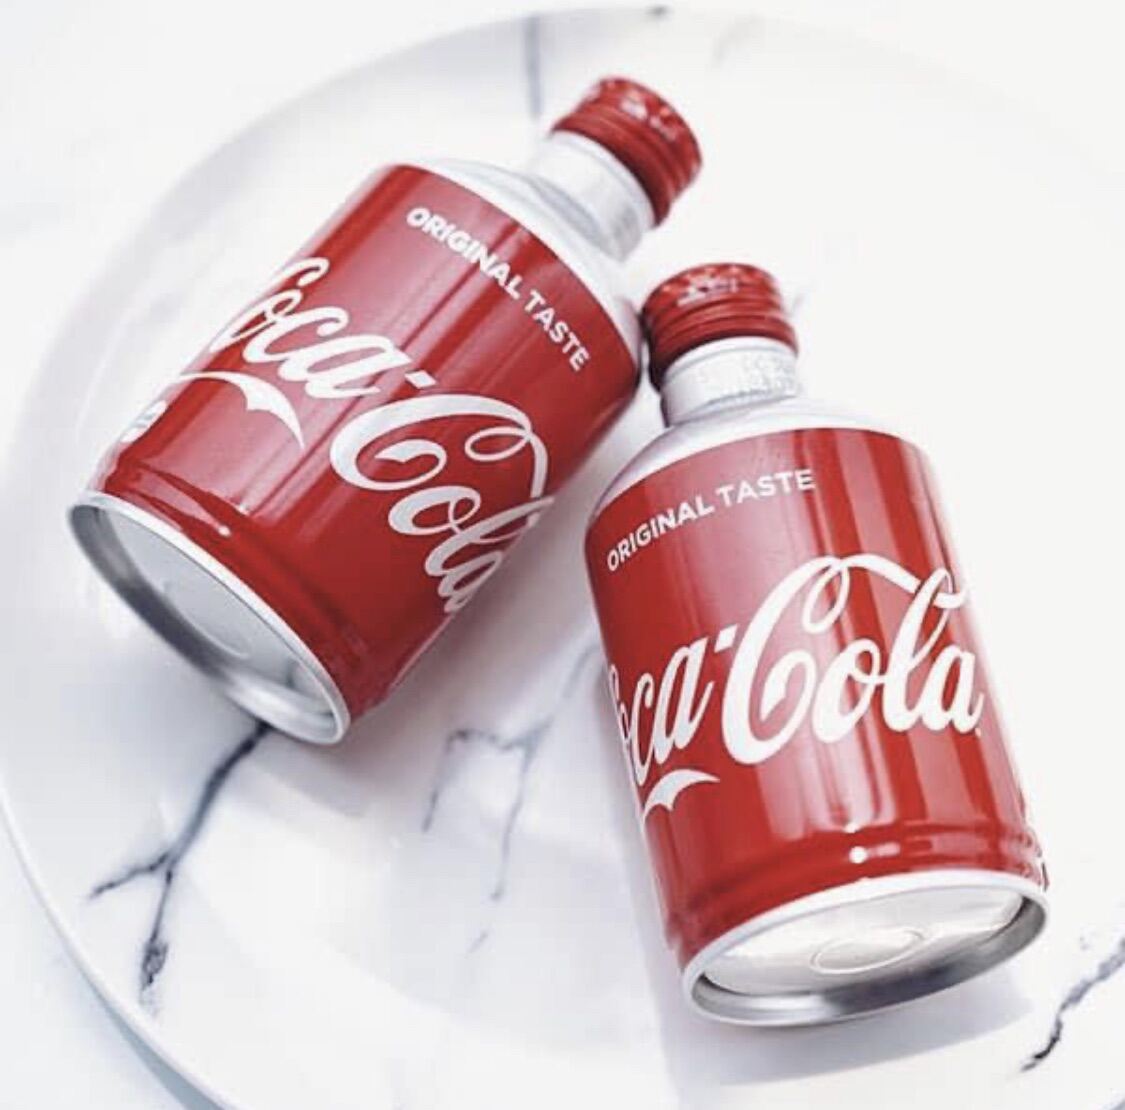 Coca cola chai nhôm nắp vặn ⚡ LOẠI ĐẶC BIỆT ⚡ Nước Coca chai nhôm mini kiểu nắp vặn 300ml Nhập khẩu Nhật Bản siêu ngon